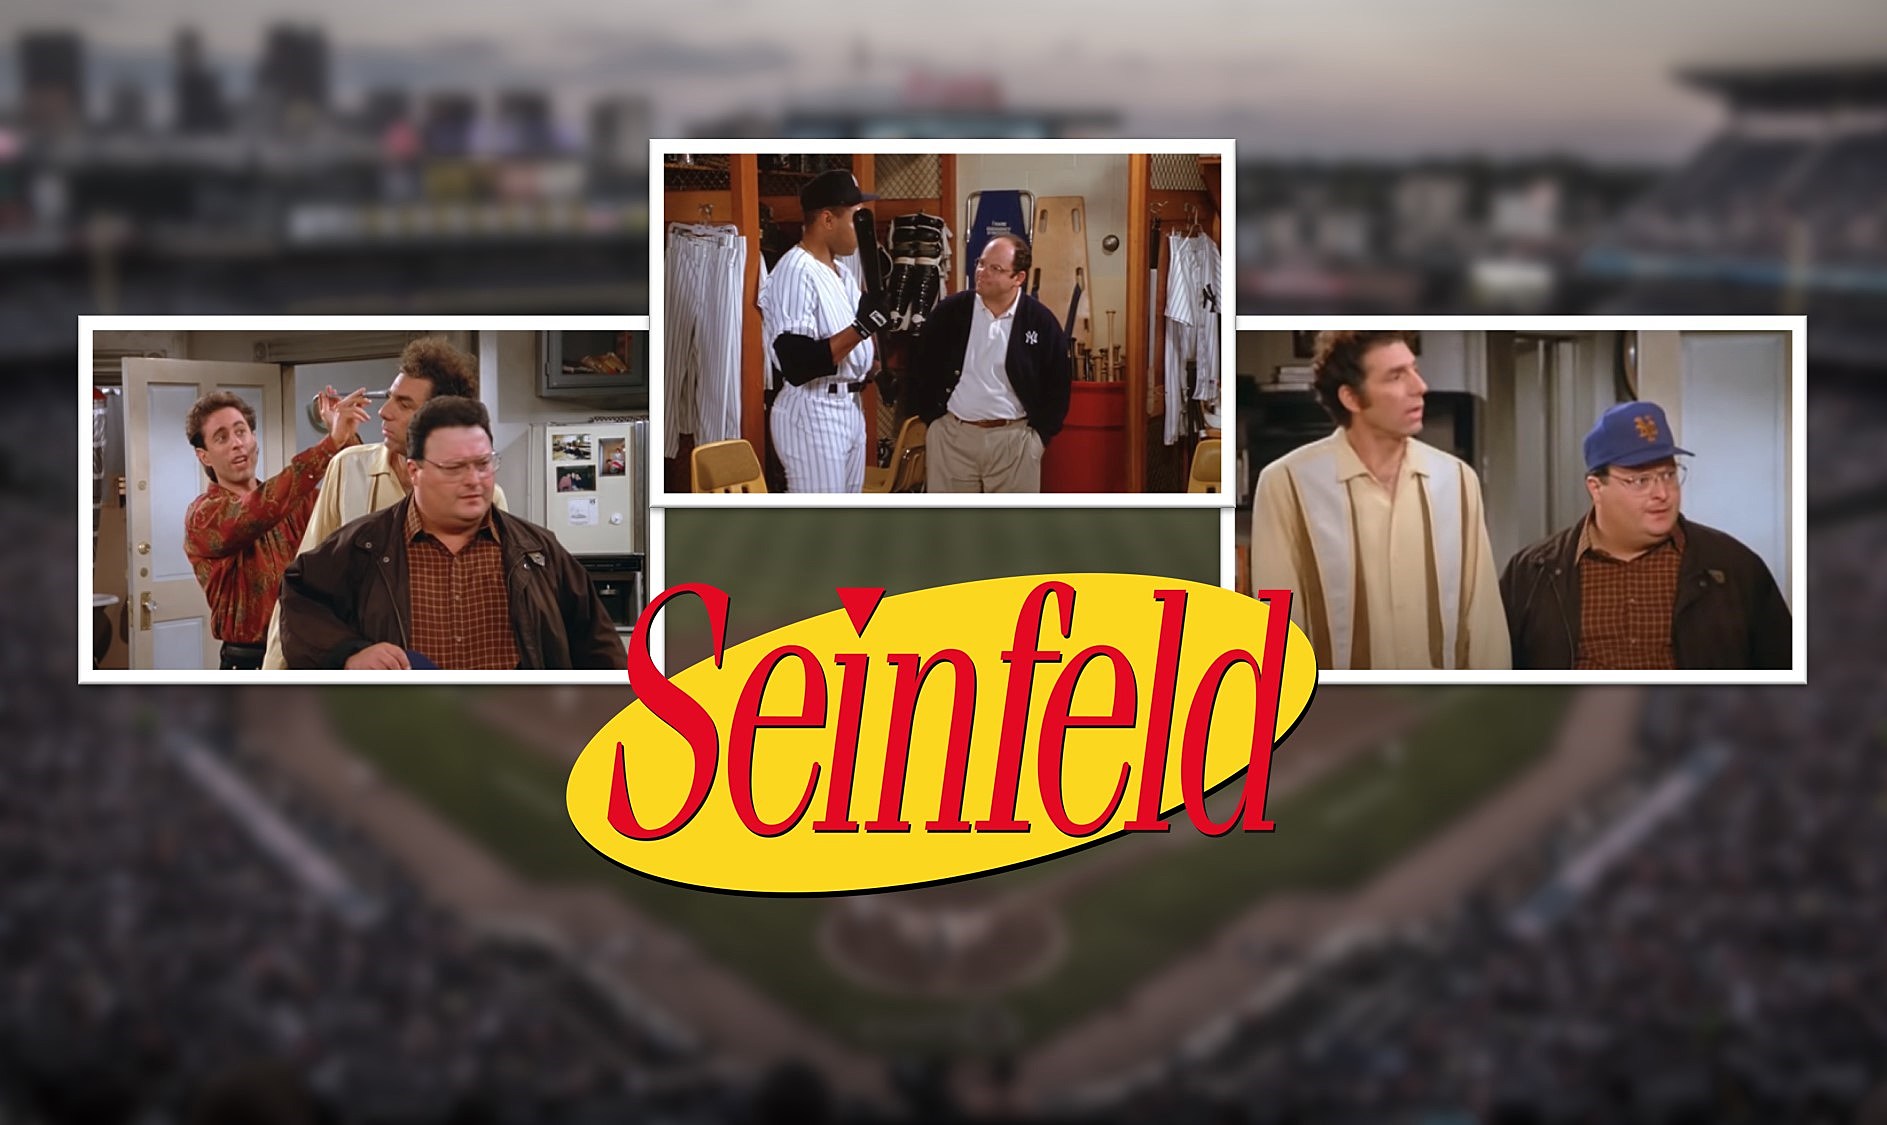 Baseball news: New York Yankees, Seinfeld, George Steinbrenner, George  Costanza